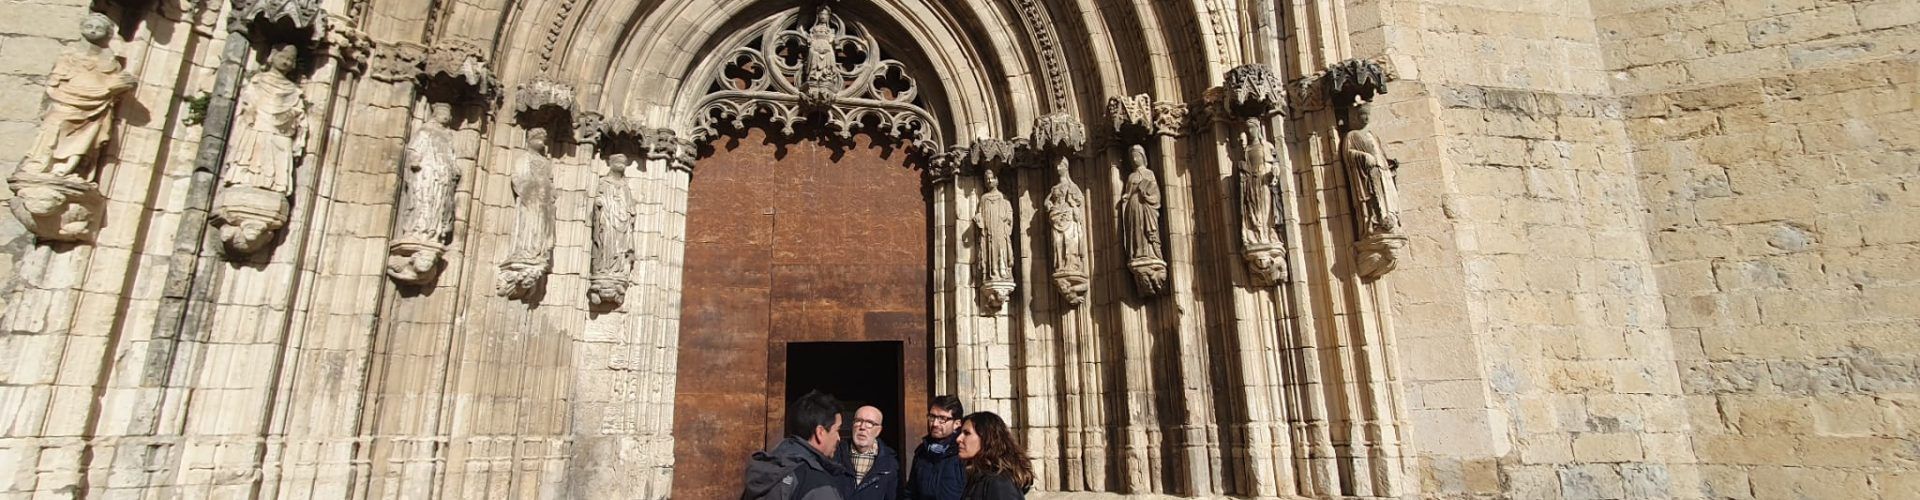 El PPCS exigeix a Morella la inversió que permeta restaurar la Porta dels Apòstols de la Basílica Arxiprestal